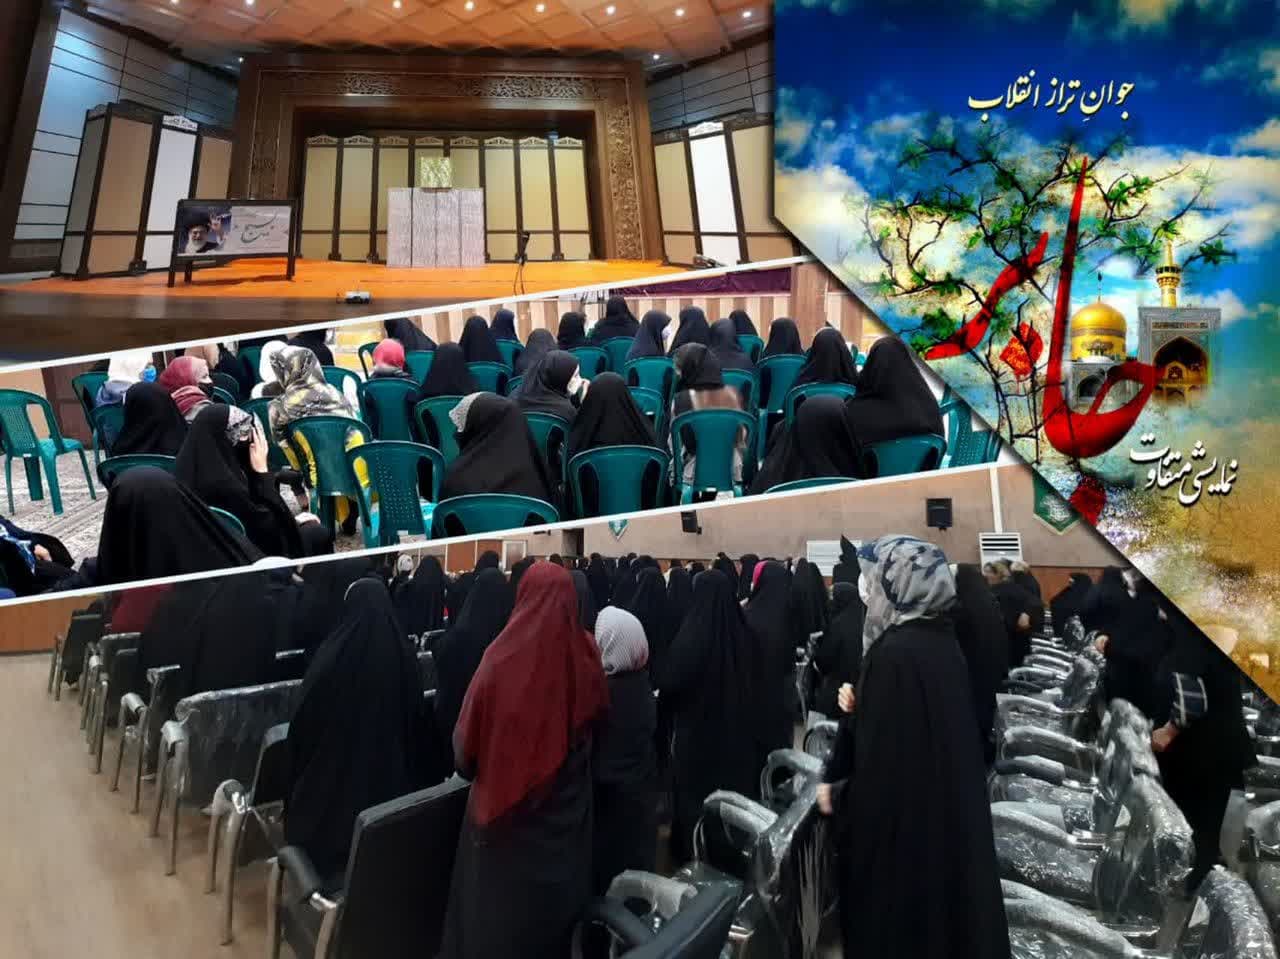 تئاتر جابر در مشهد مقدس